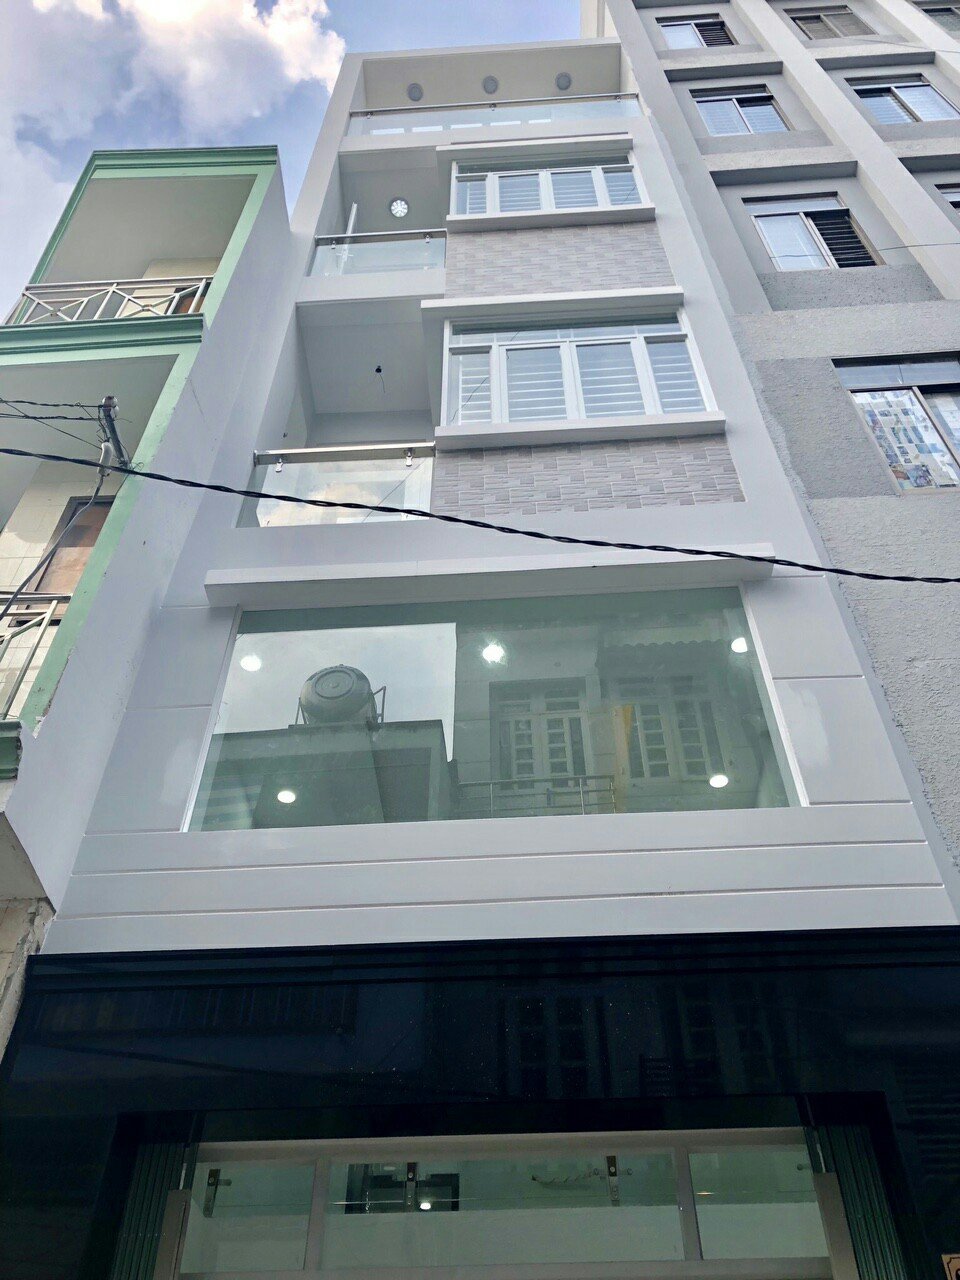 Bán nhà mặt tiền đường Trần Đình Xu, quận 1, giá 24 tỷ, trệt, 3 lầu. 0915710202